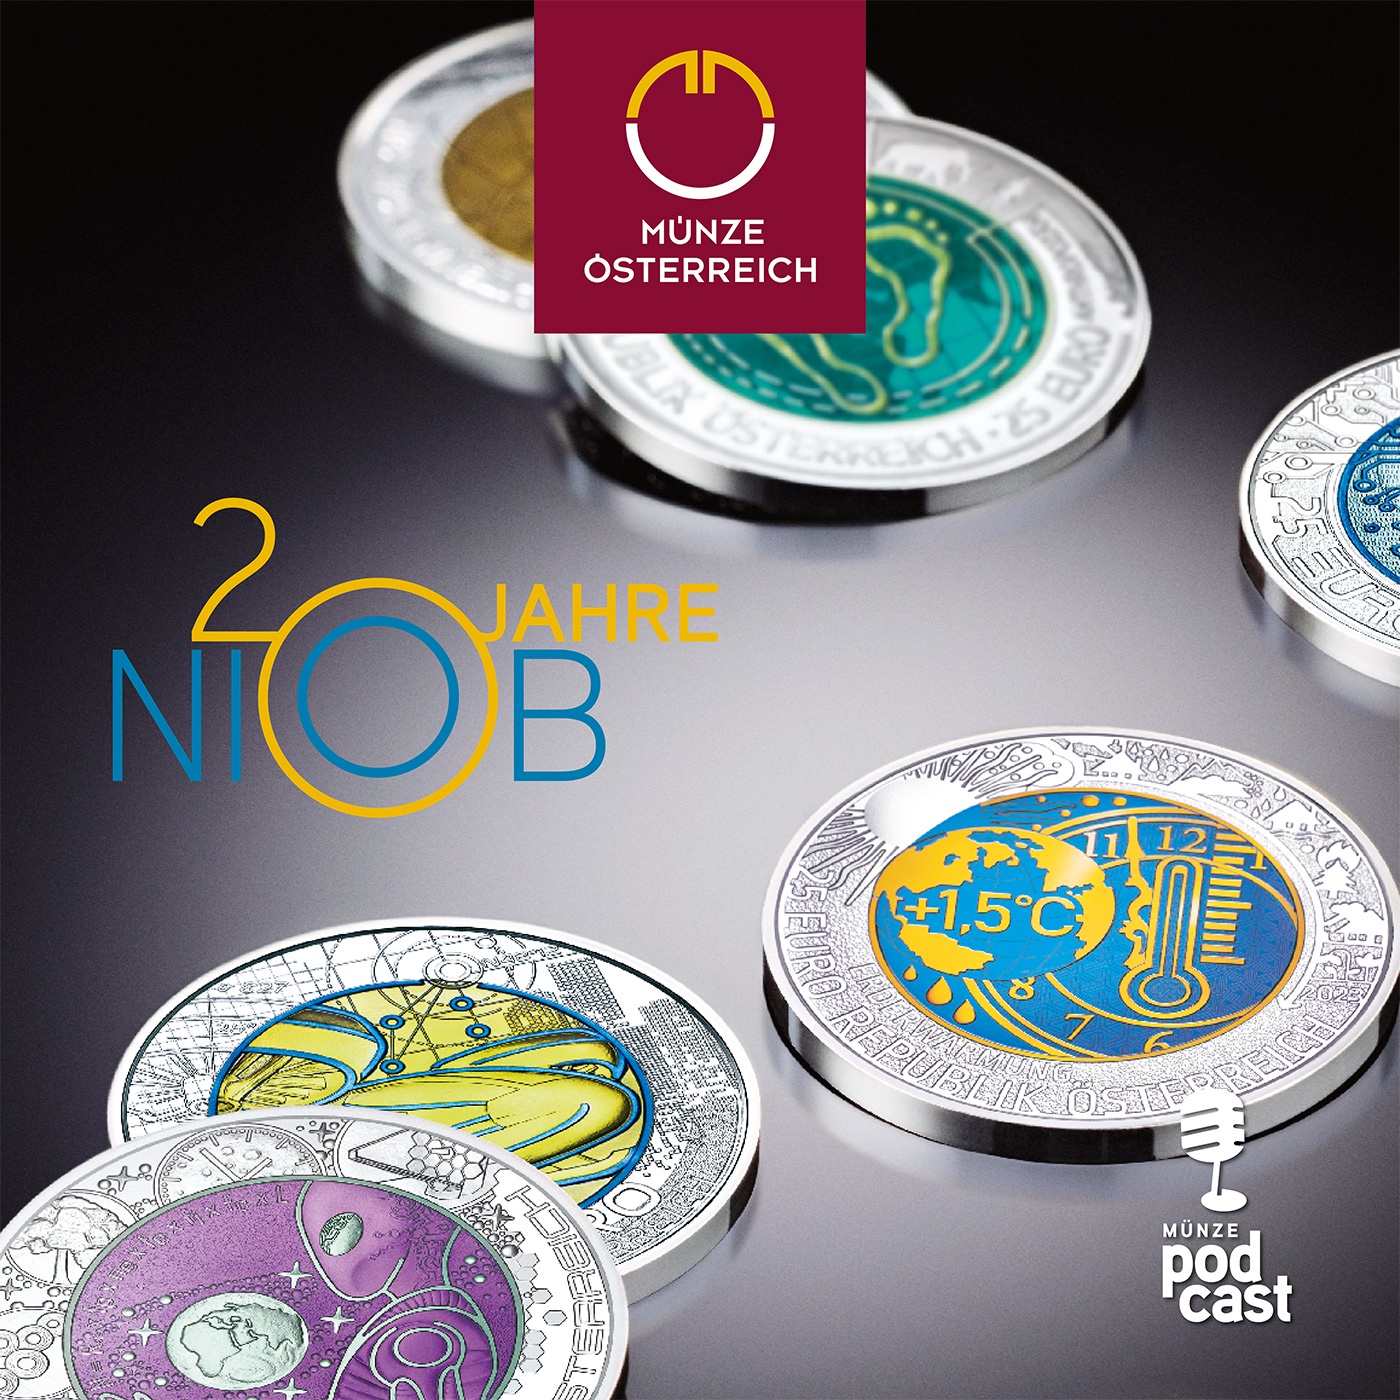 #24 Die Geschichte der bunten Münzen: 20 Jahre Niob